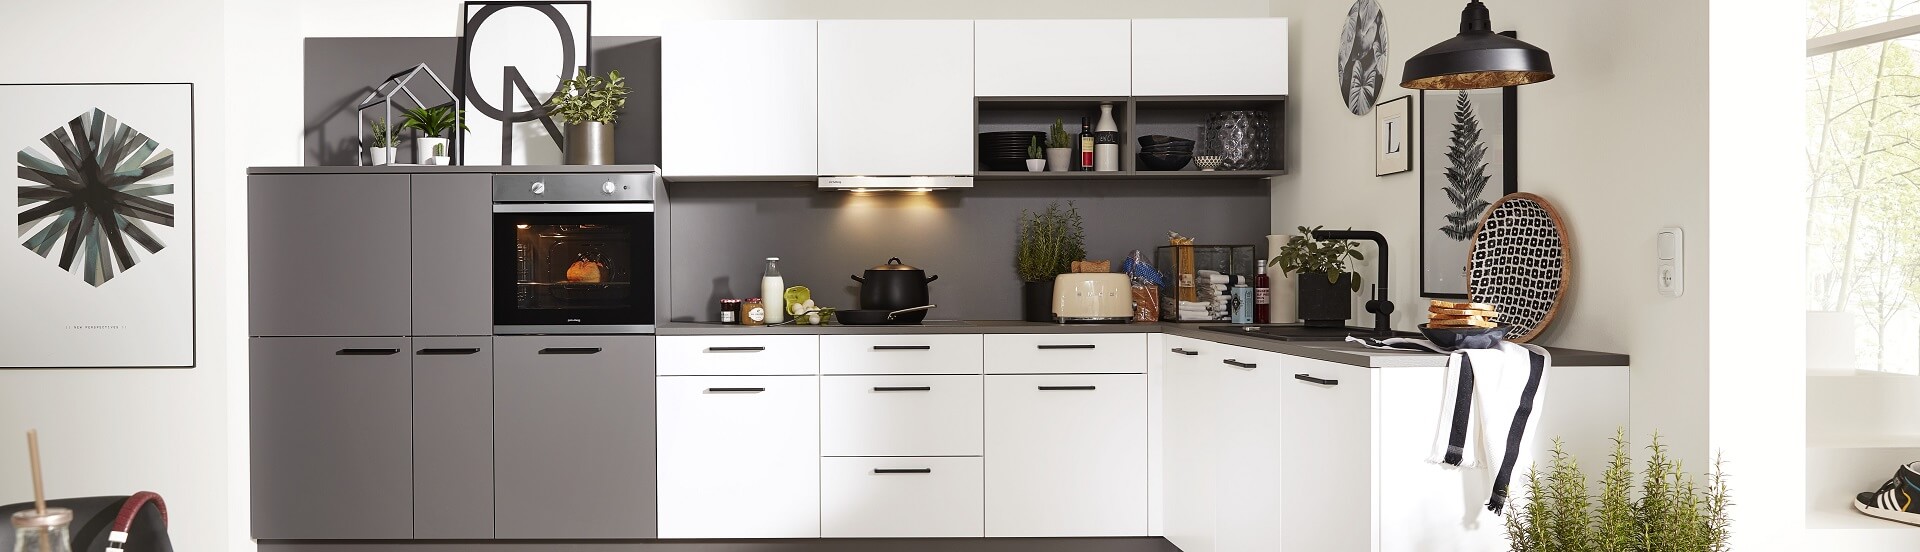 Einr ansprechende L-Küche in Weiß und Grau mit schwarzen Deko-Accessoires.